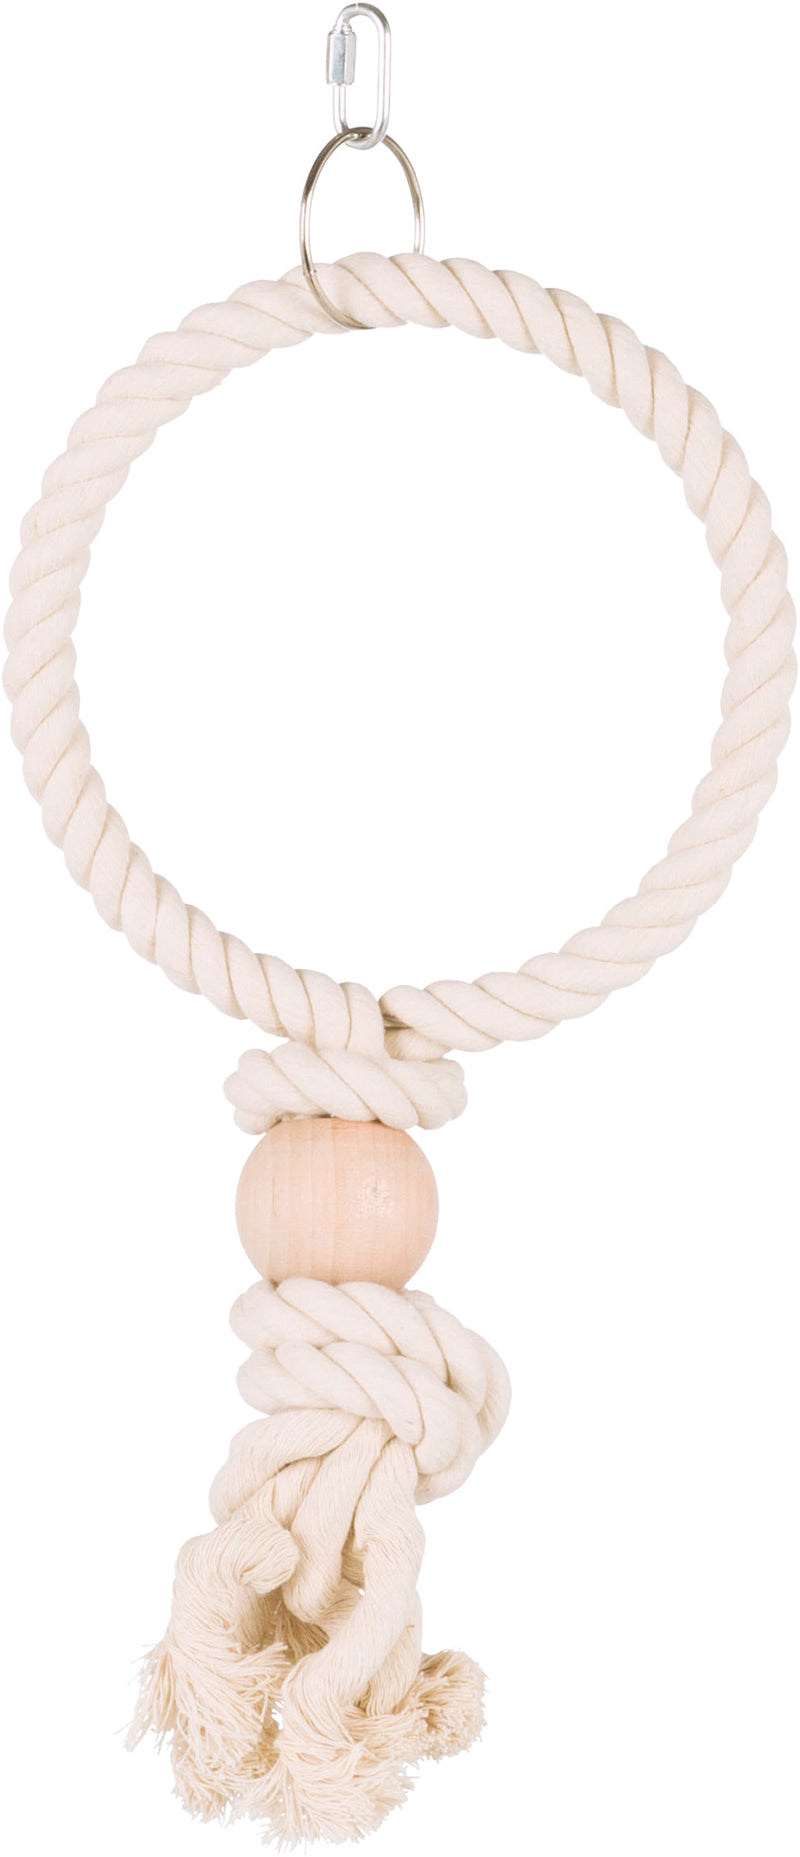 5158 Rope ring, diam. 19 cm